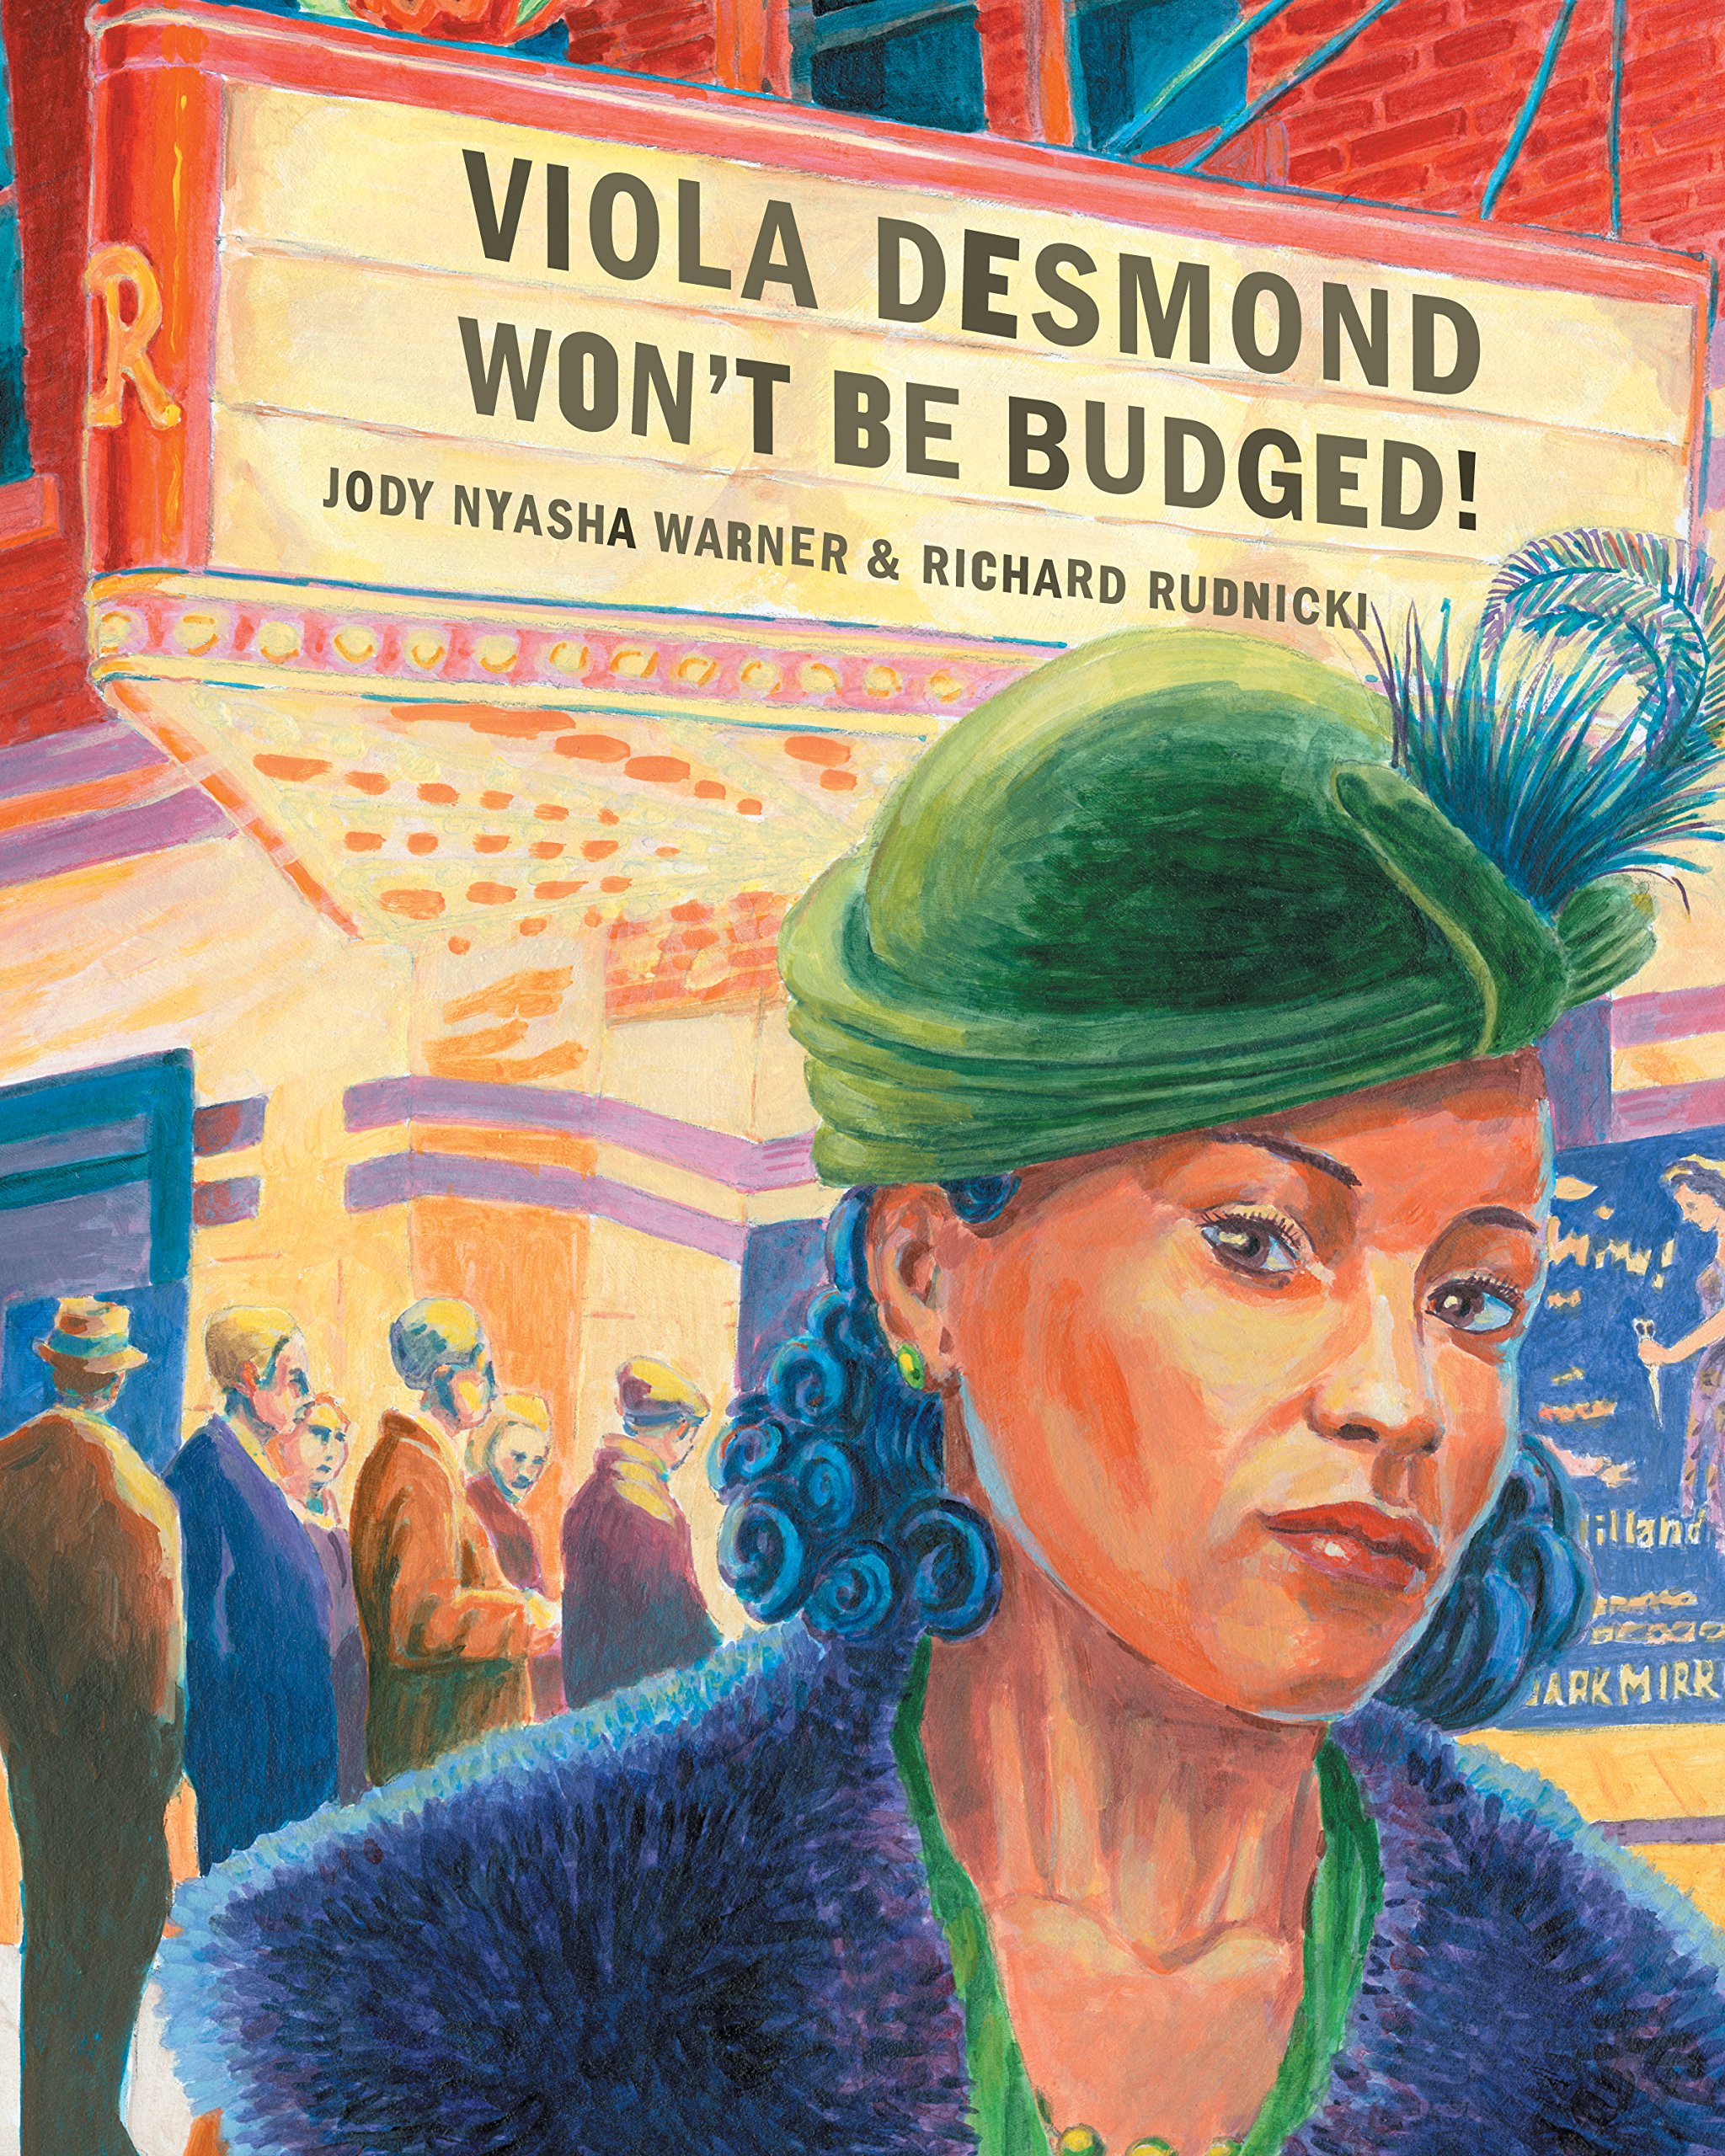 Viola Desmond Won't Be Budged by Jody Nyasha Warner